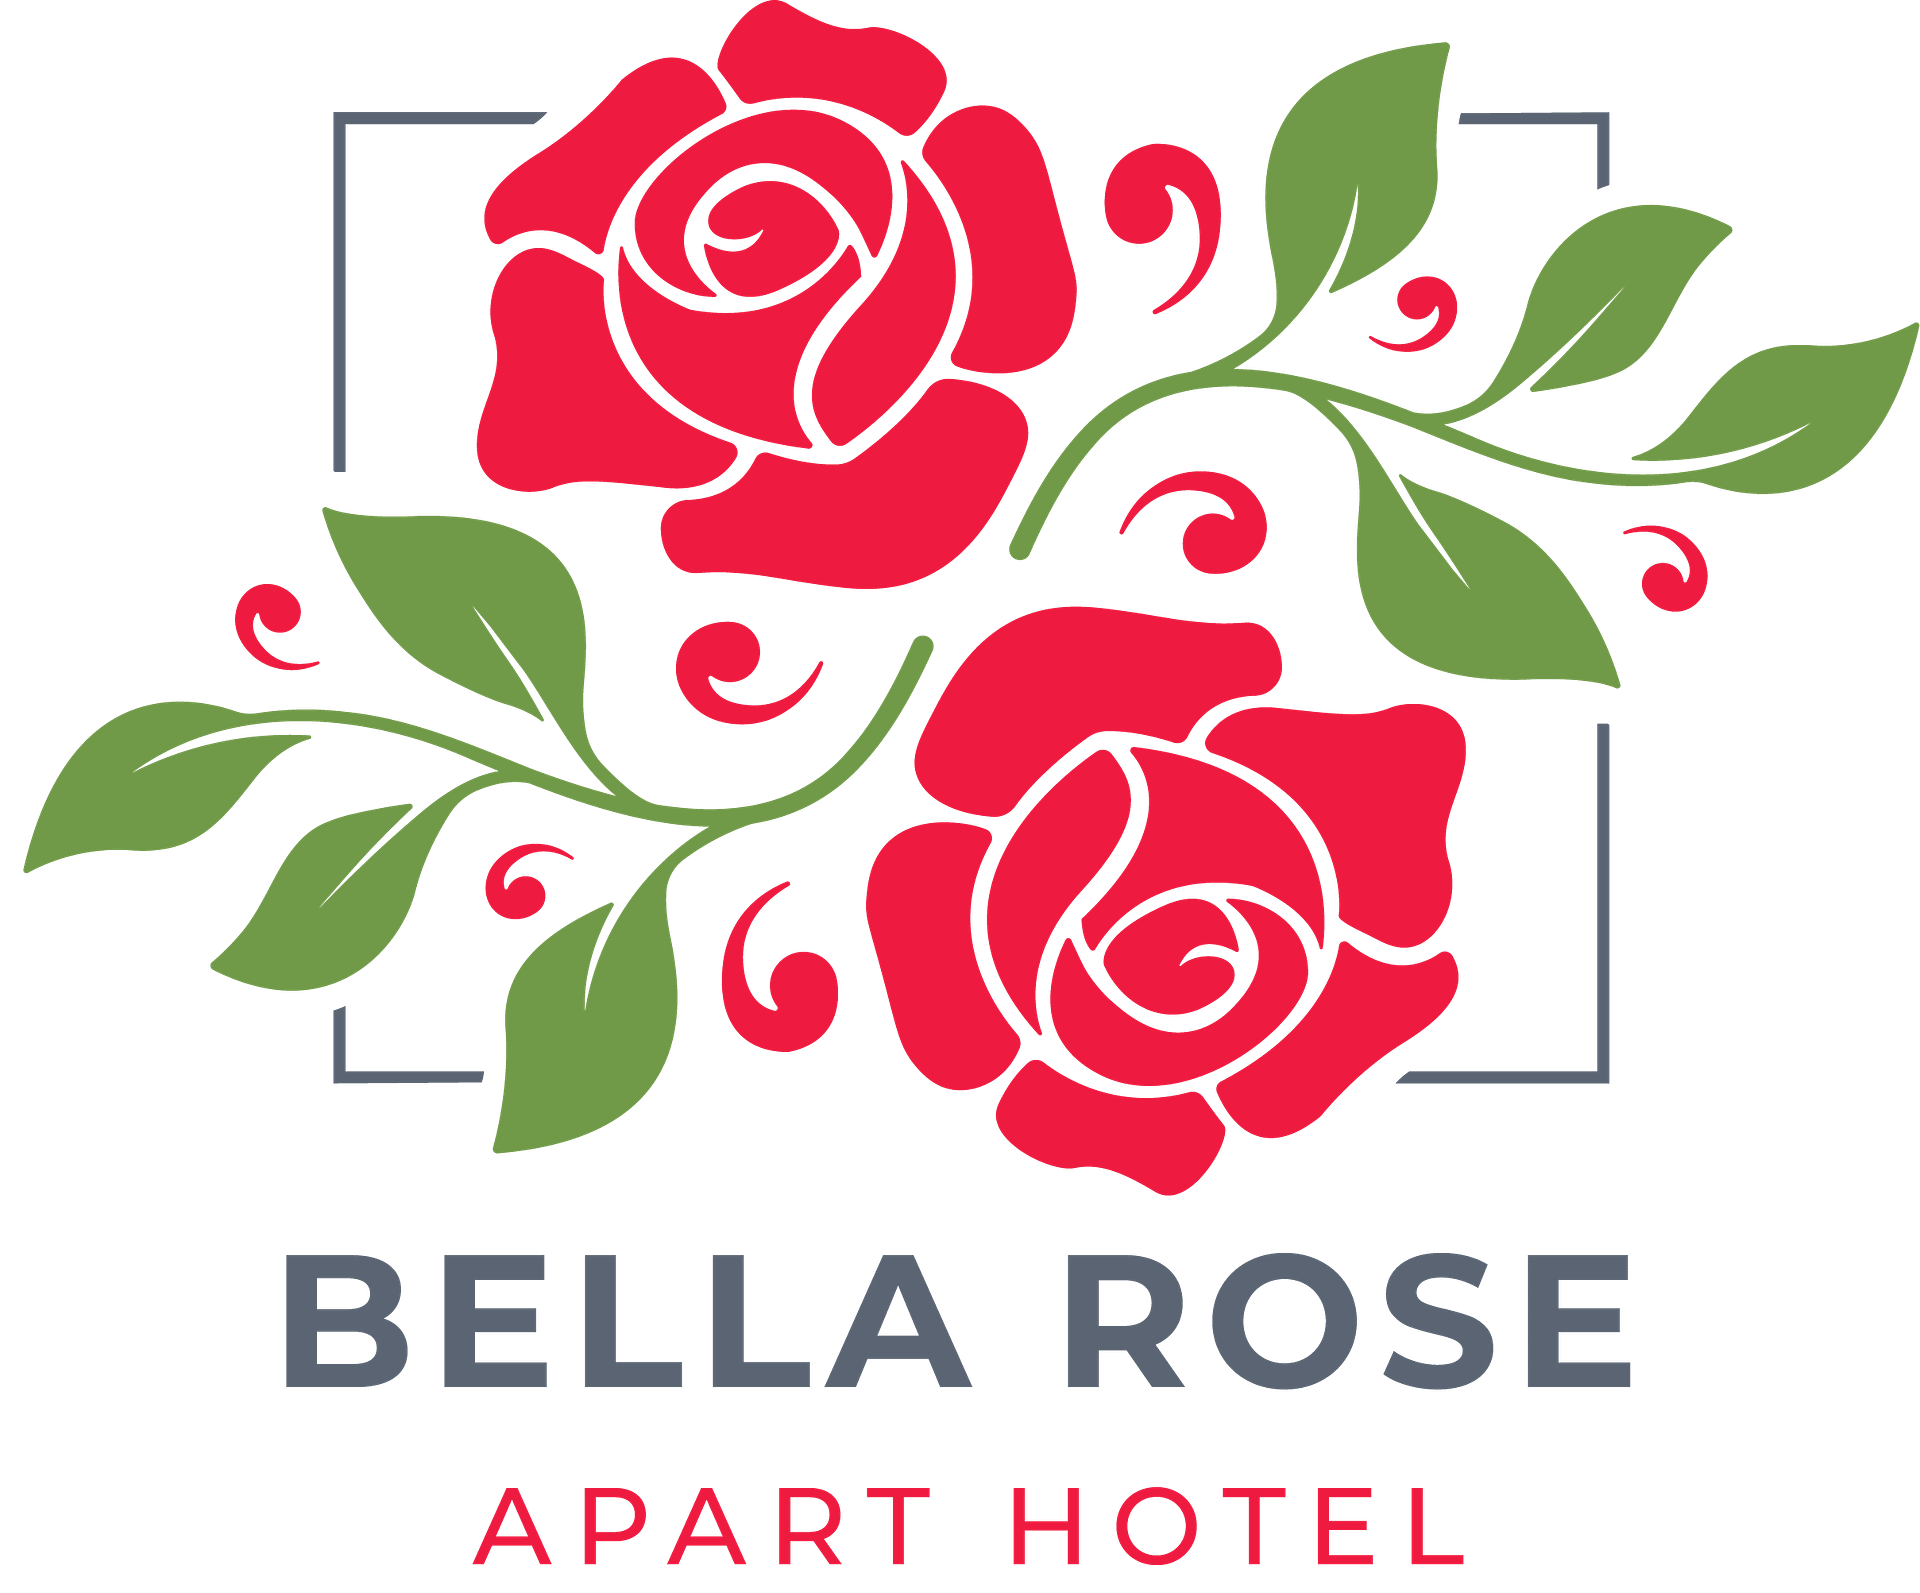 Логотип цветочного магазина. Onat Kassap Bella Rose Apart Hotel.